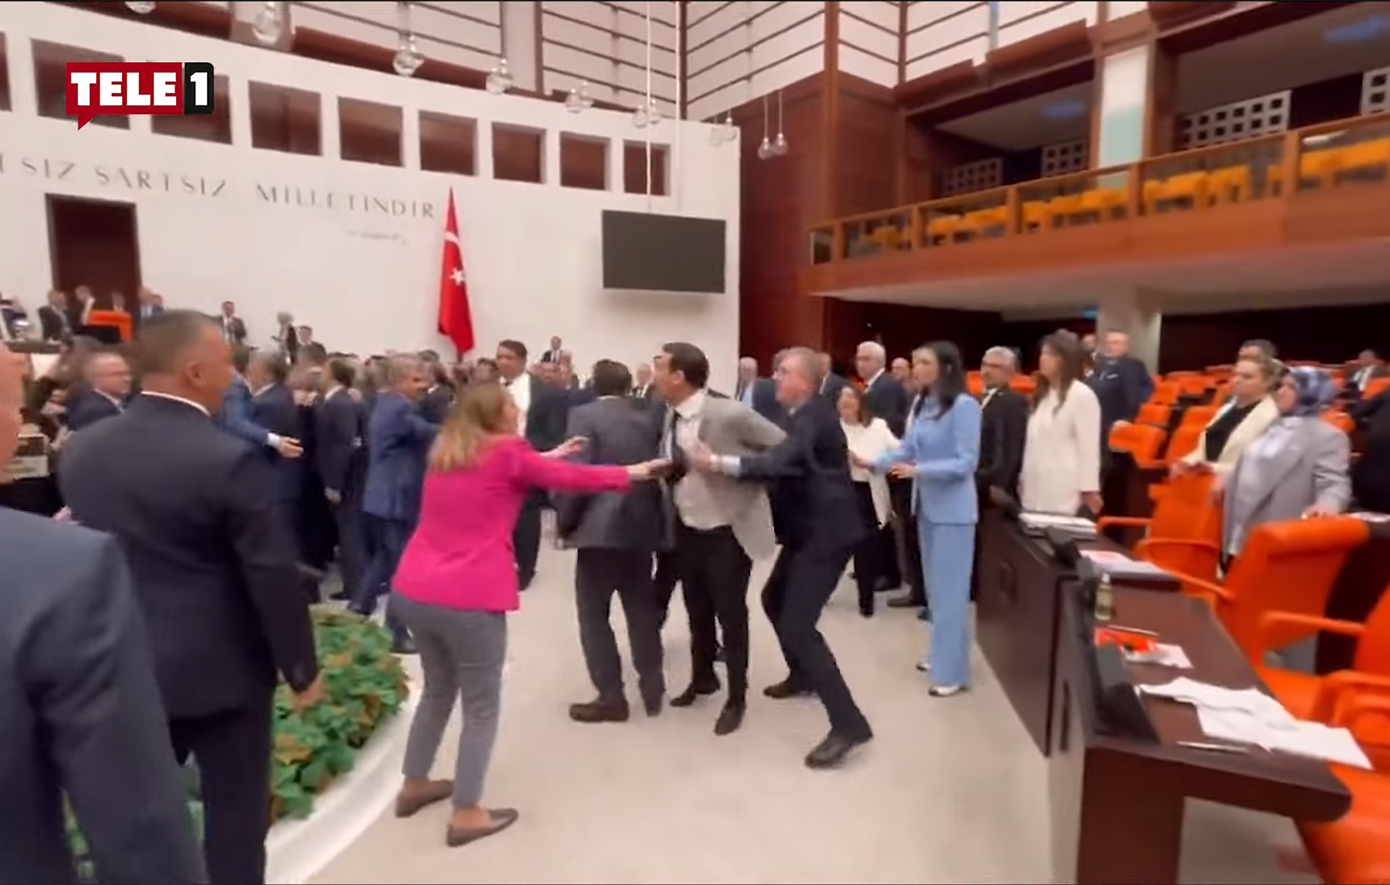 Πιάστηκαν στα χέρια στην τουρκική εθνοσυνέλευση &#8211; Δείτε βίντεο